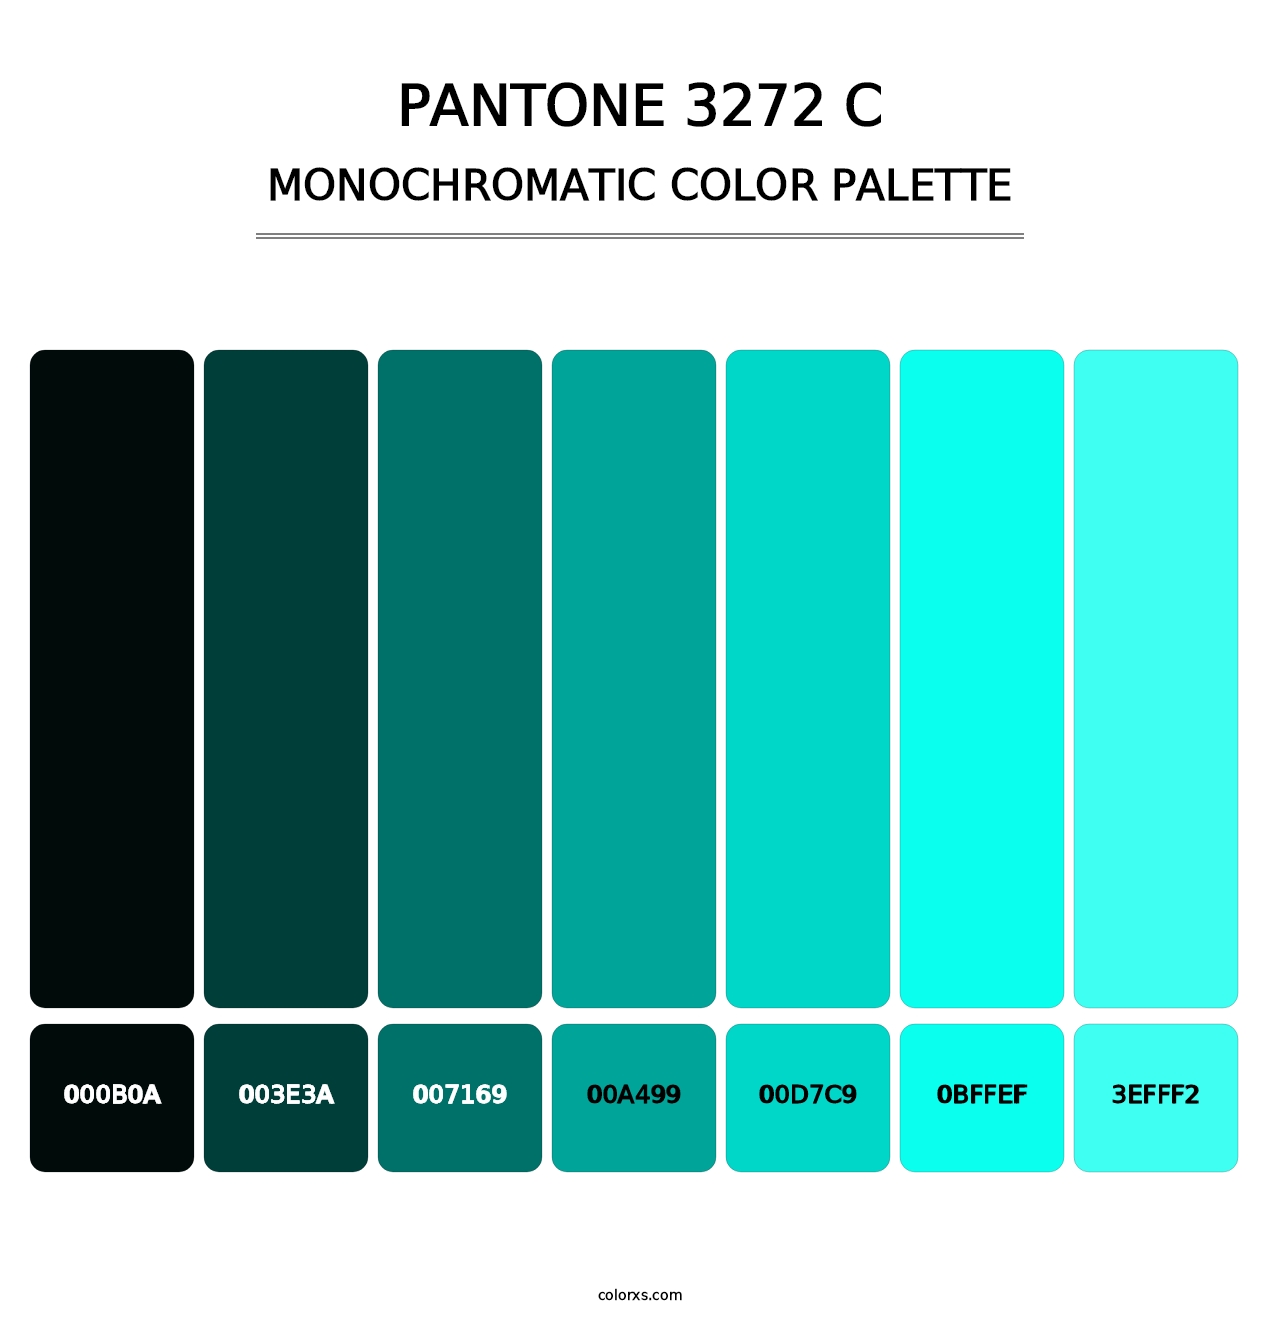 PANTONE 3272 C - Monochromatic Color Palette